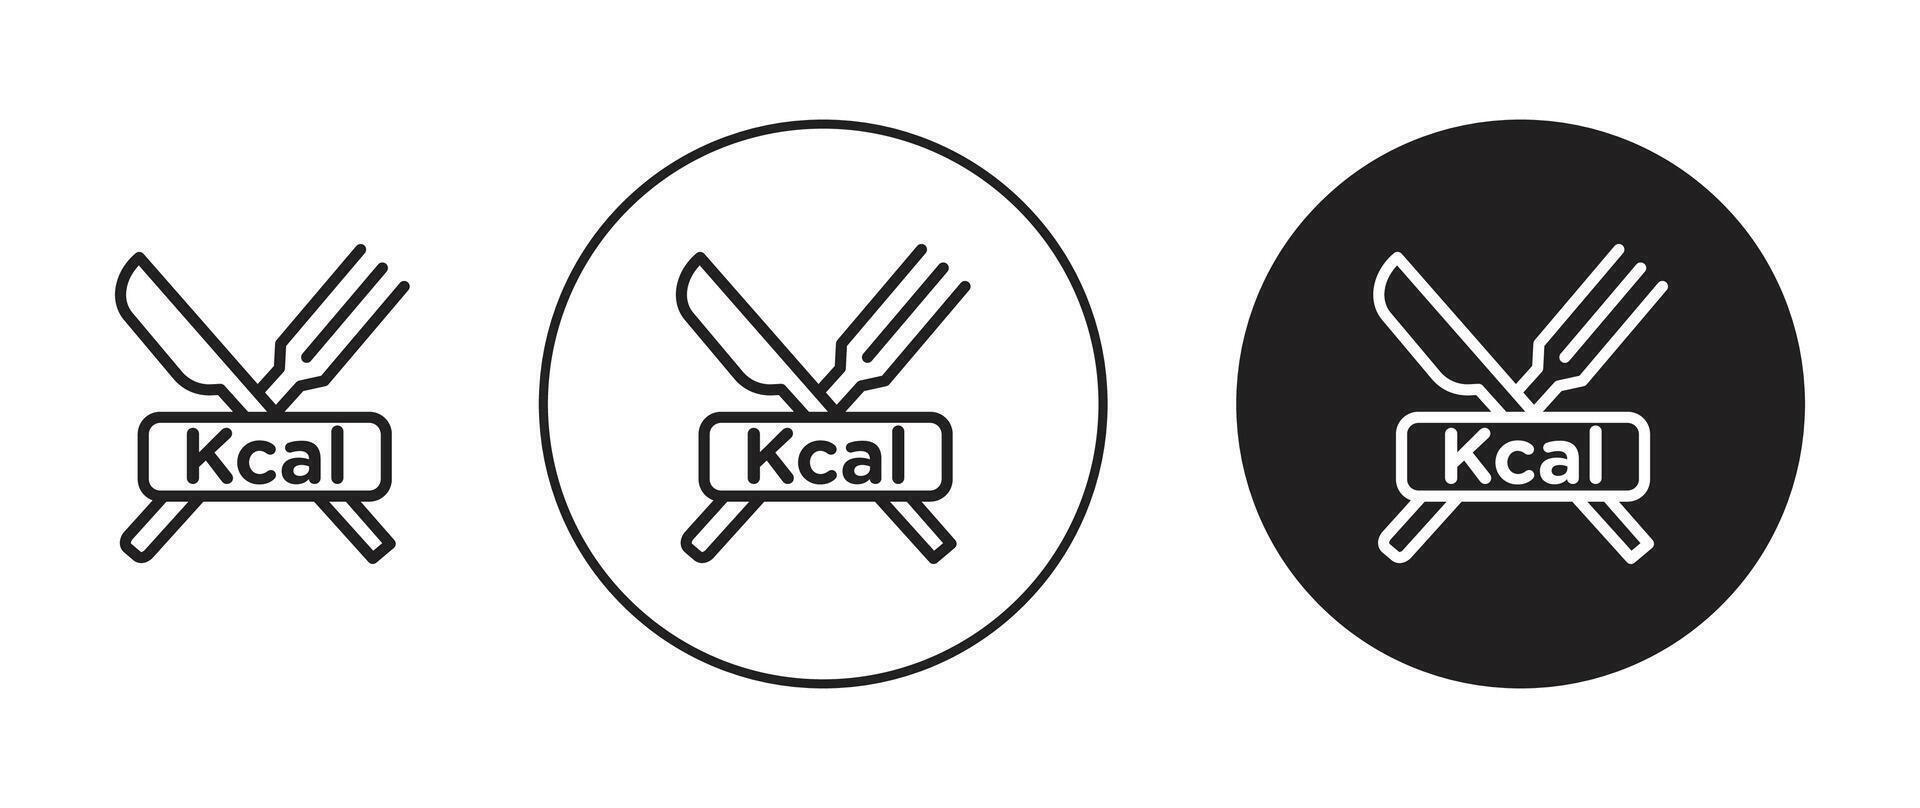 Kcal vector icon